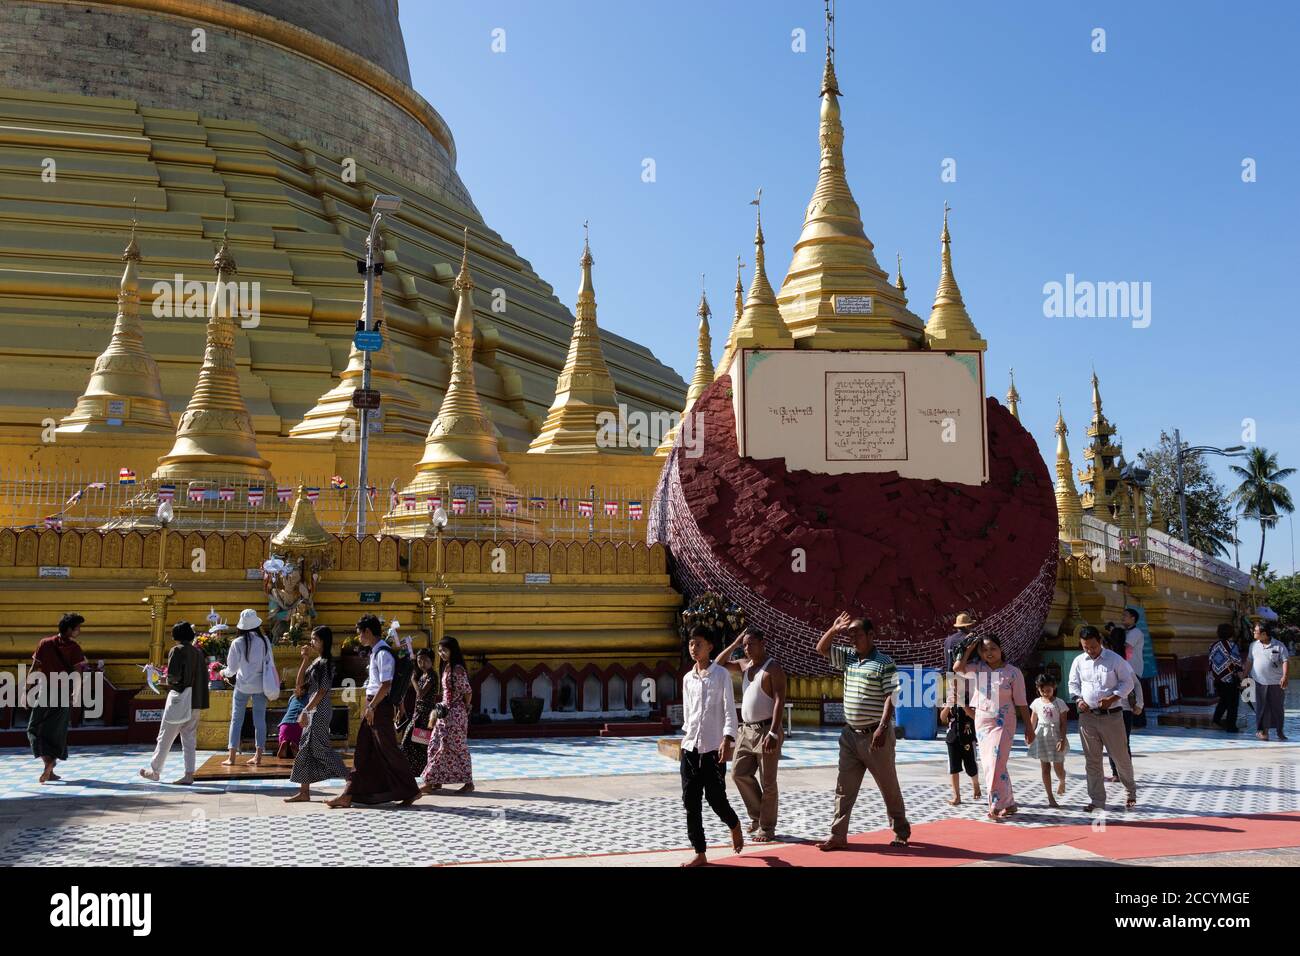 Das Innere des buddhistischen Tempels von Shwemawdaw. Die höchste Pagode in Myanmar, in der Vergangenheit durch mehrere Erdbeben zerstört und wieder aufgebaut. Bago - Pegu, Myanmar Stockfoto